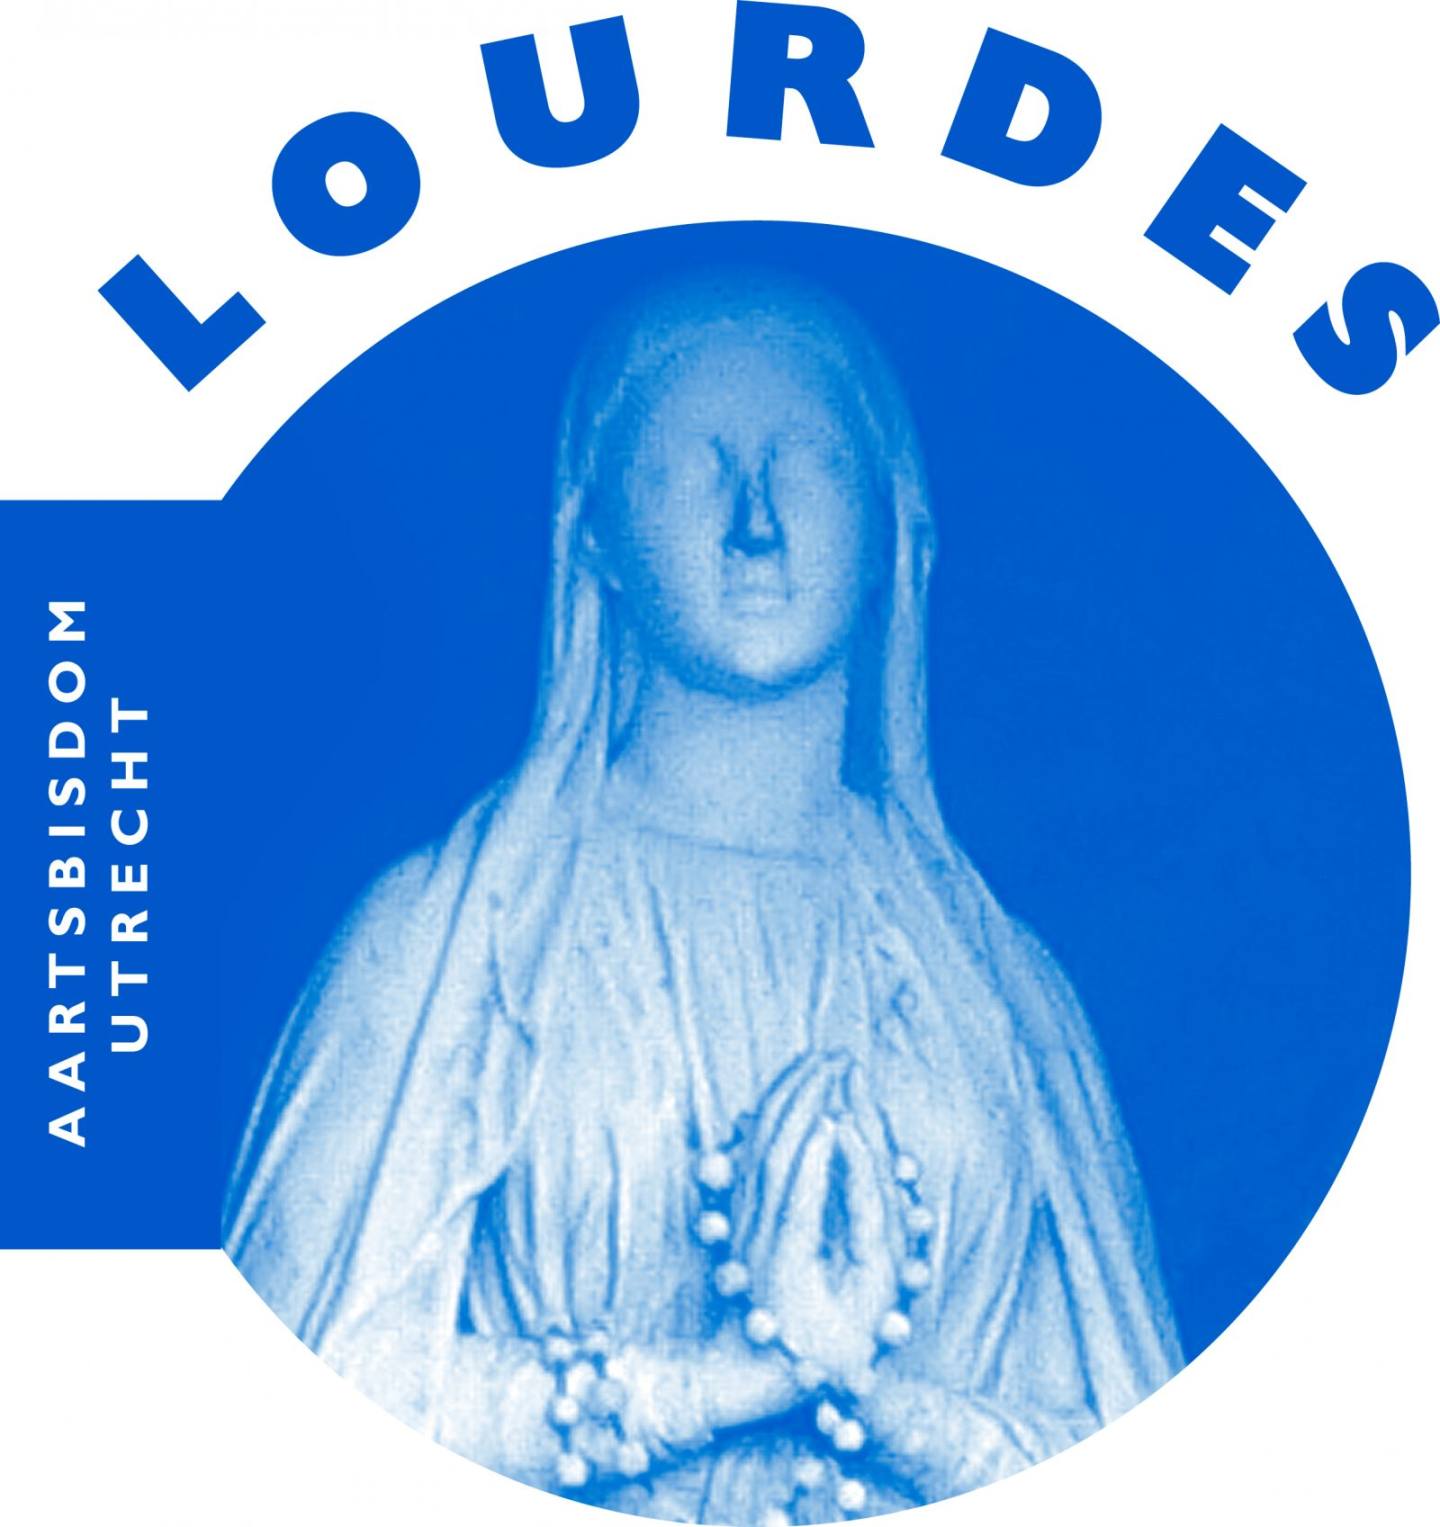 Logo bisdombedevaart Lourdes